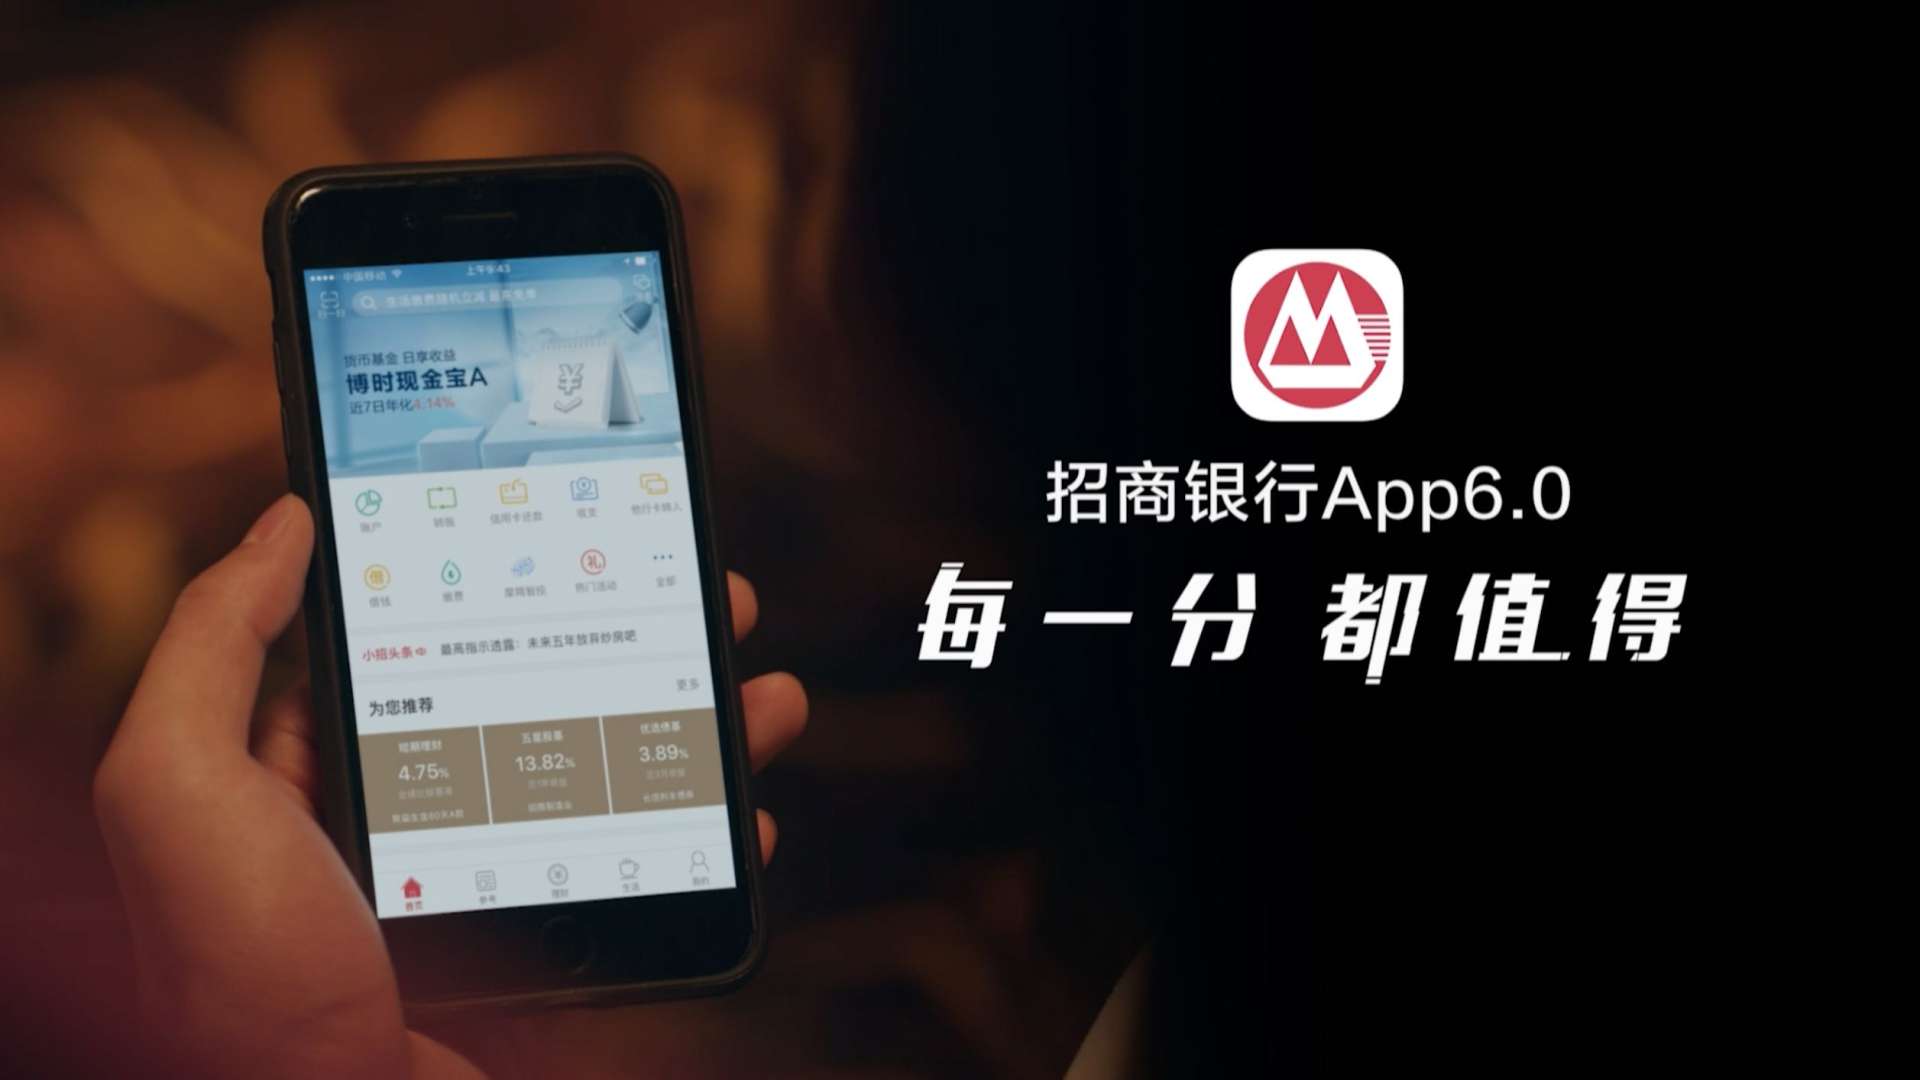 招商银行手机App 30s 形象广告